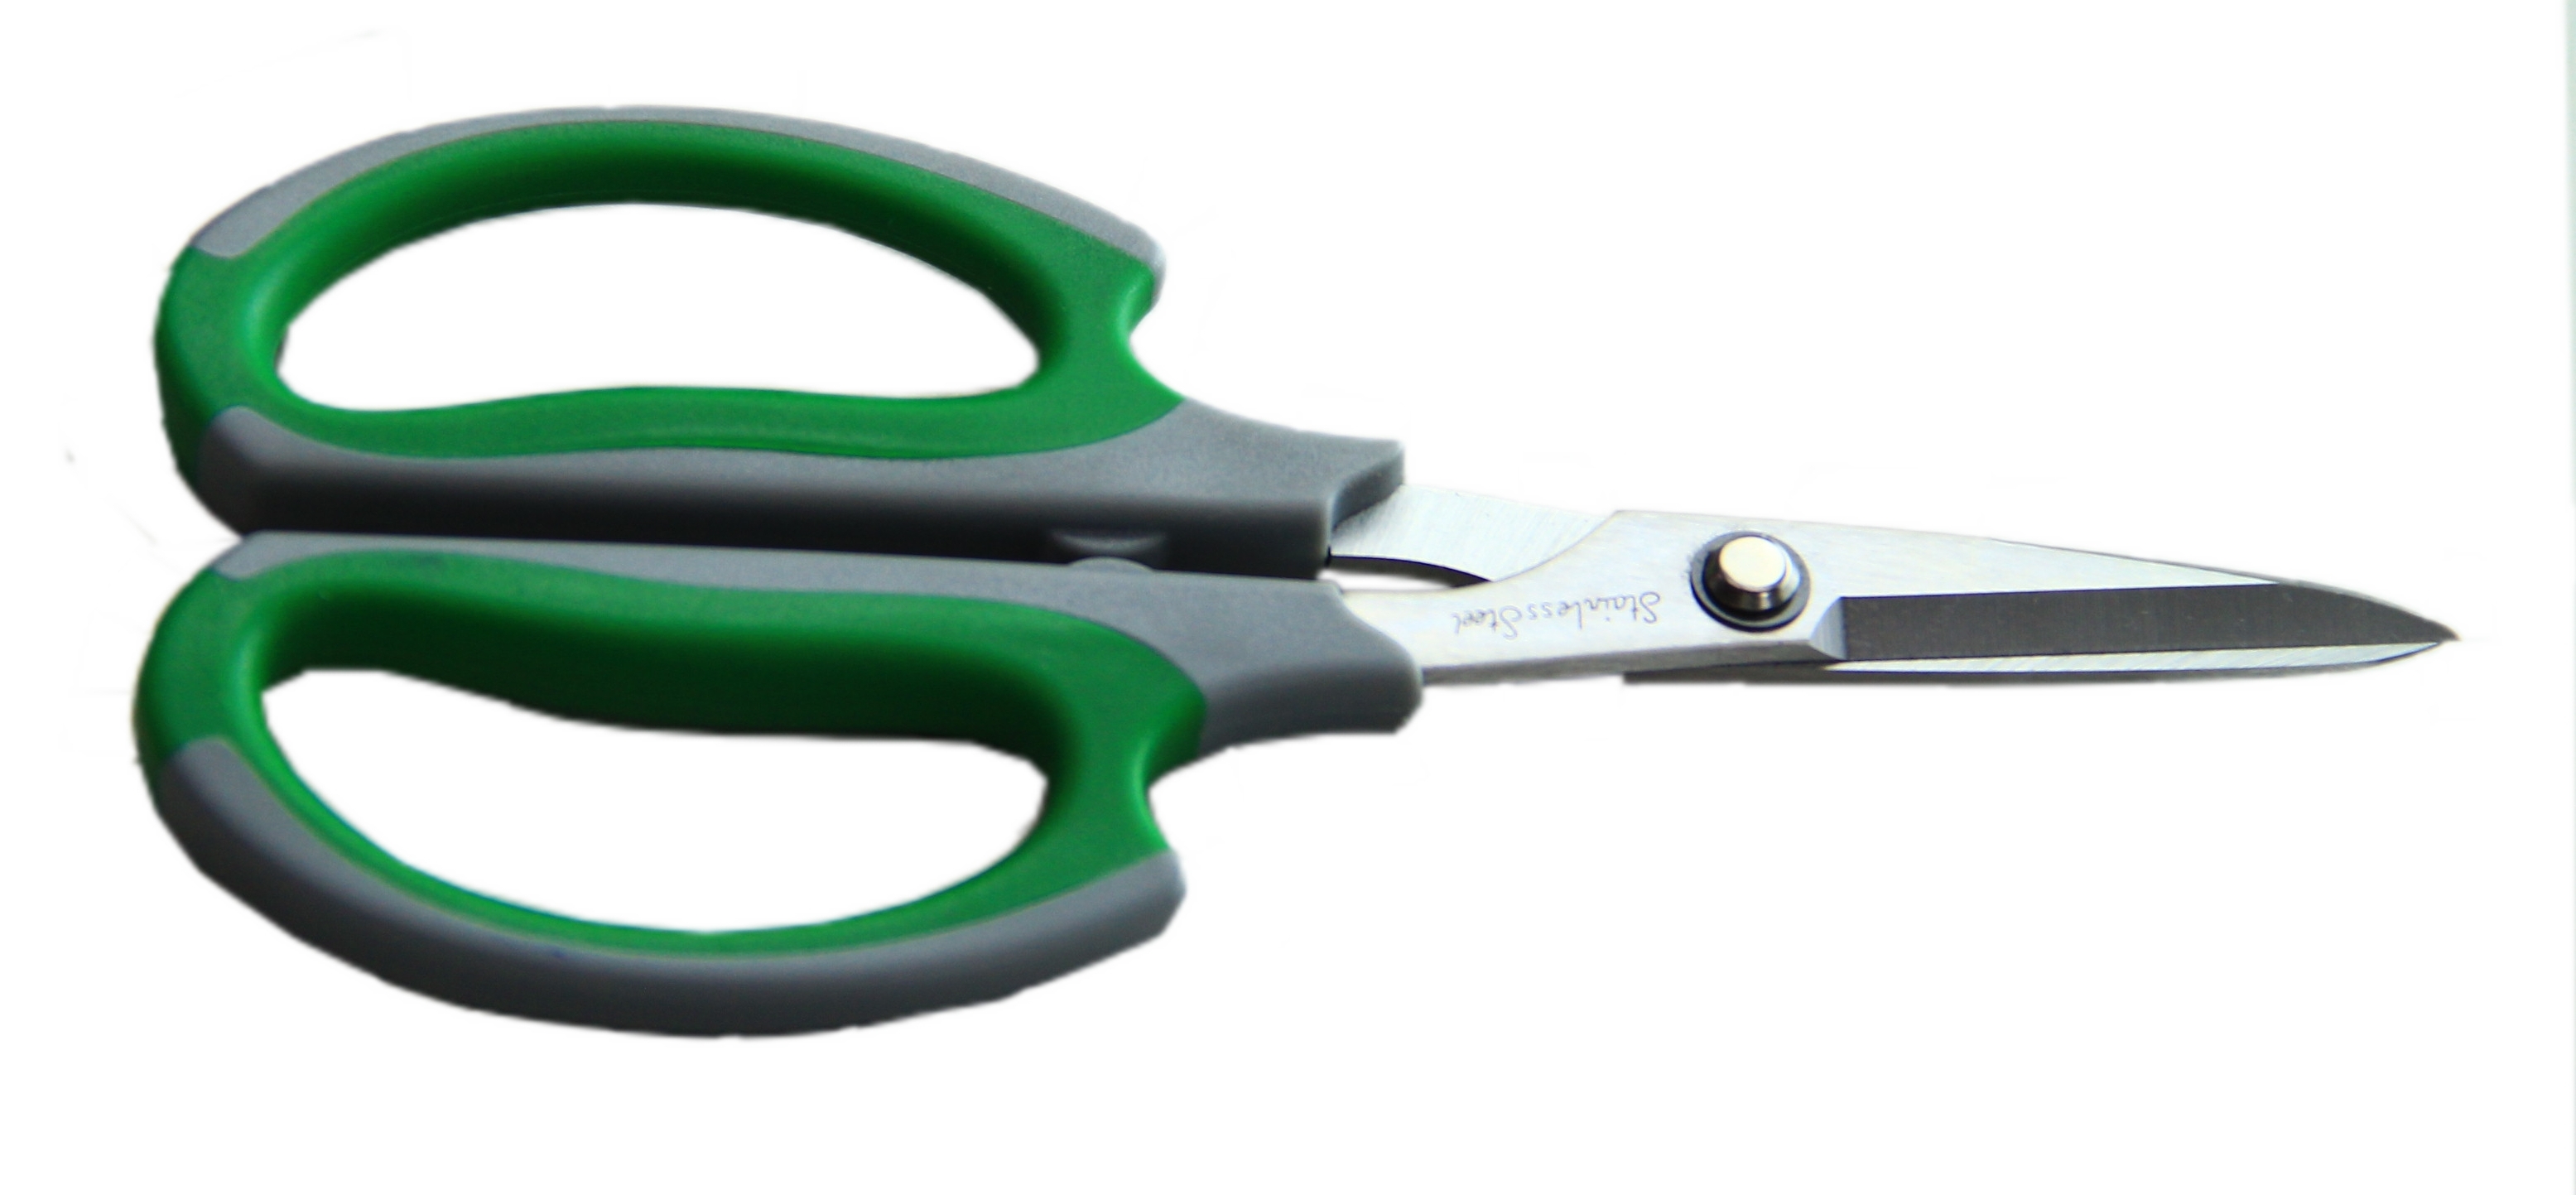 6.75” Utility Scissors